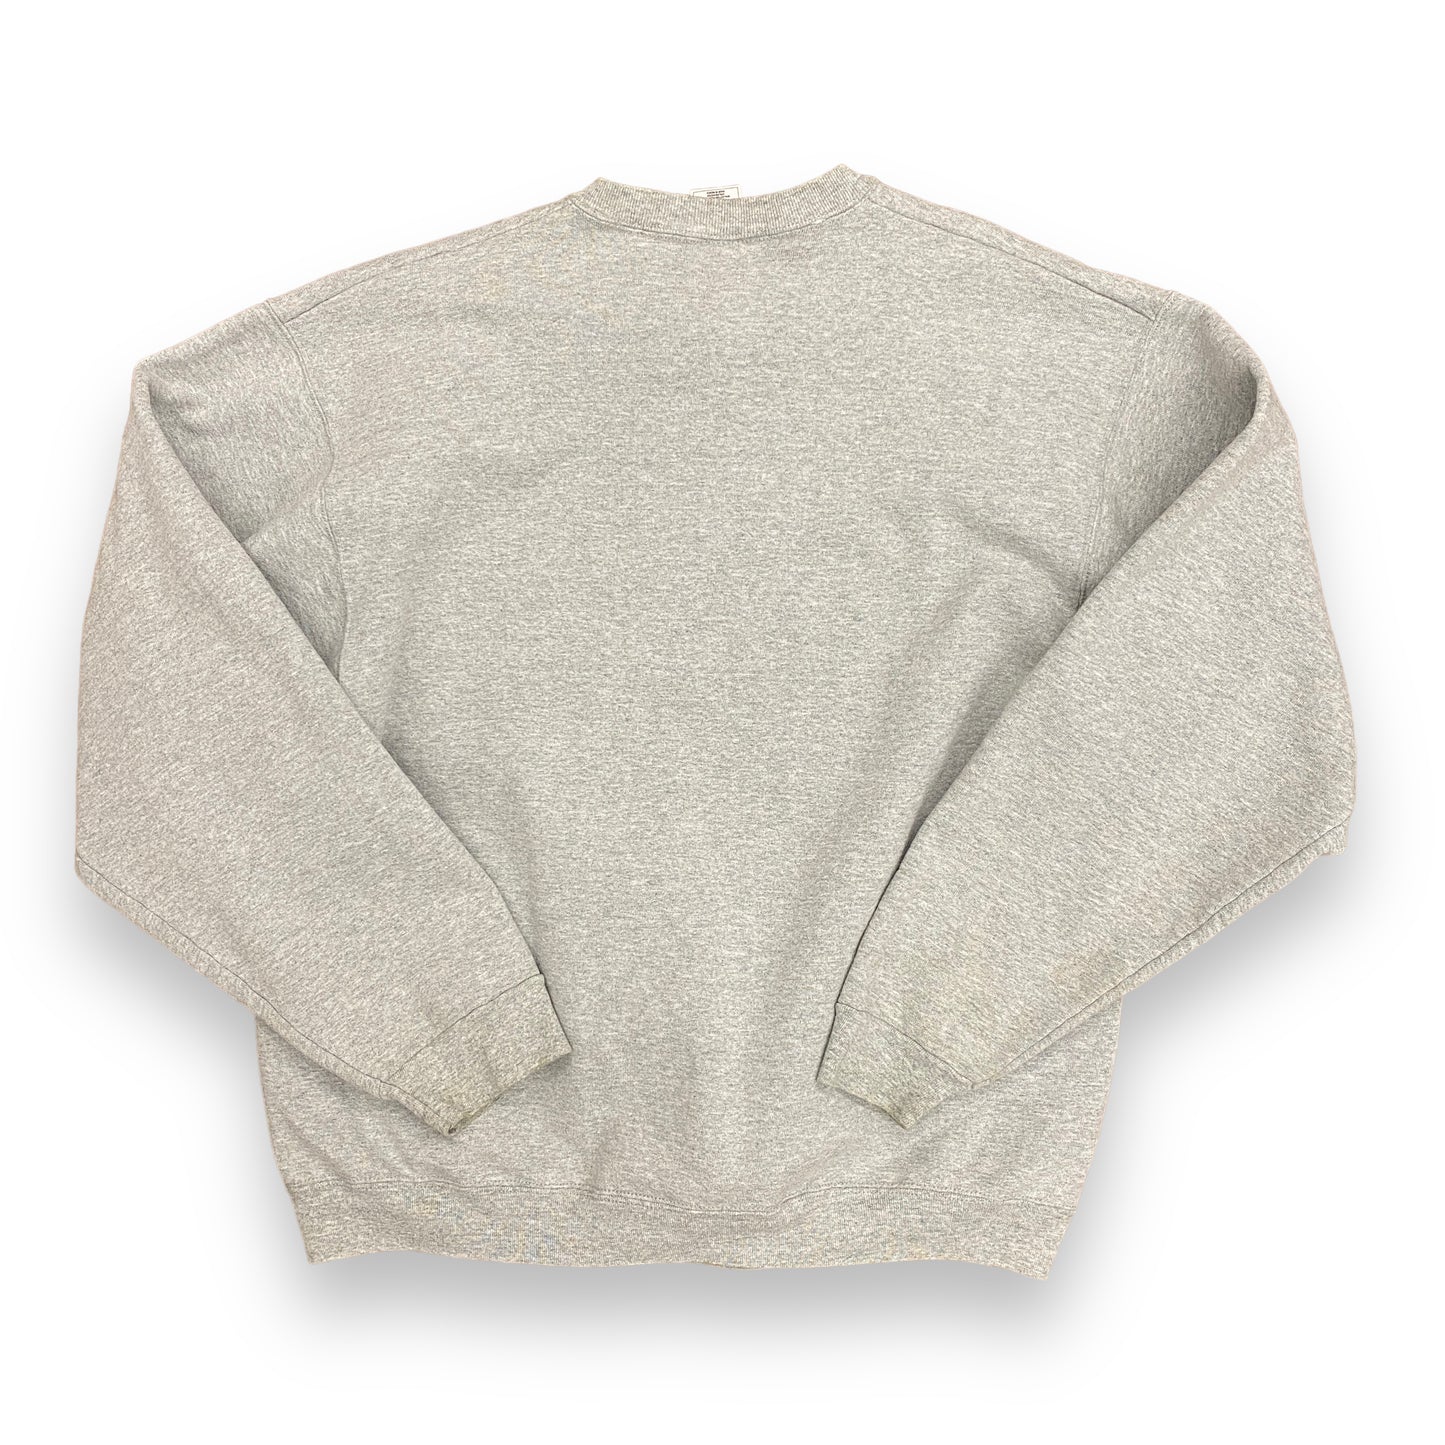 Vintage 90s New York Jets Football Crewneck Sweatshirt - Size XL